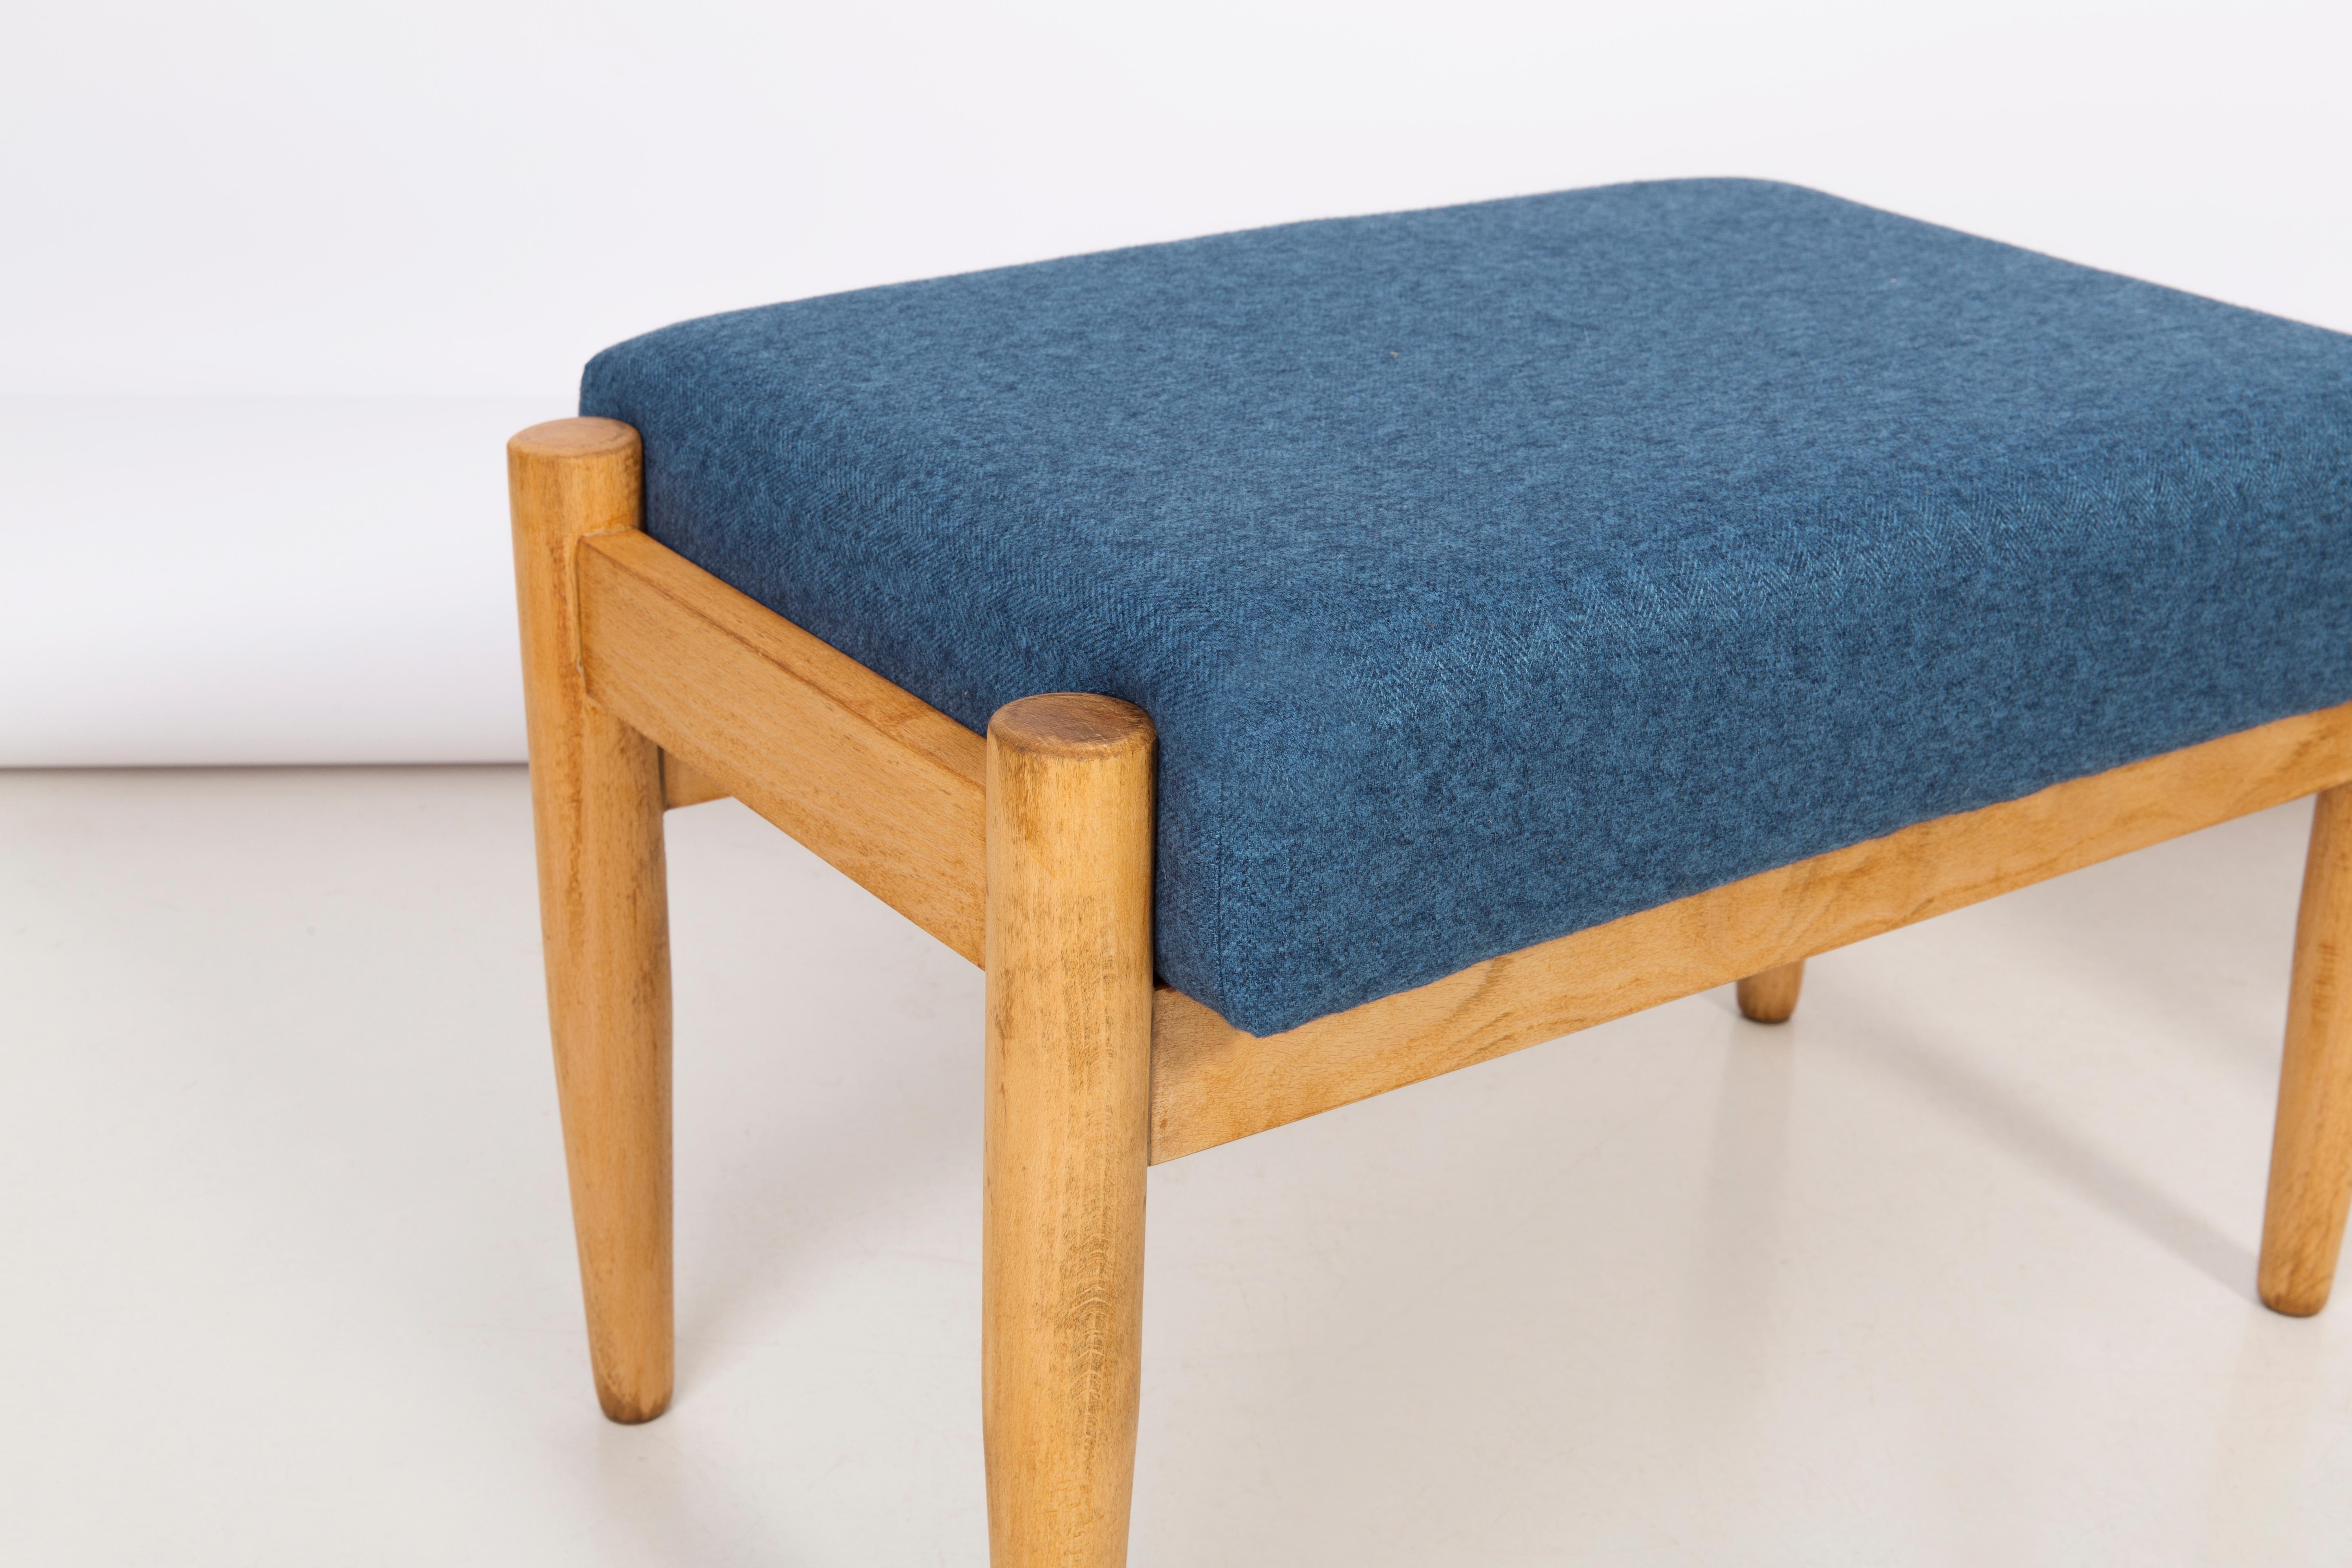 Hocker aus der Zeit um die 1960er Jahre. Schöne blaue hochwertige Polsterung. Der Hocker besteht aus einem gepolsterten Teil, einer Sitzfläche und sich nach unten verjüngenden Holzbeinen, die für den Stil der 1960er Jahre charakteristisch sind. Wir